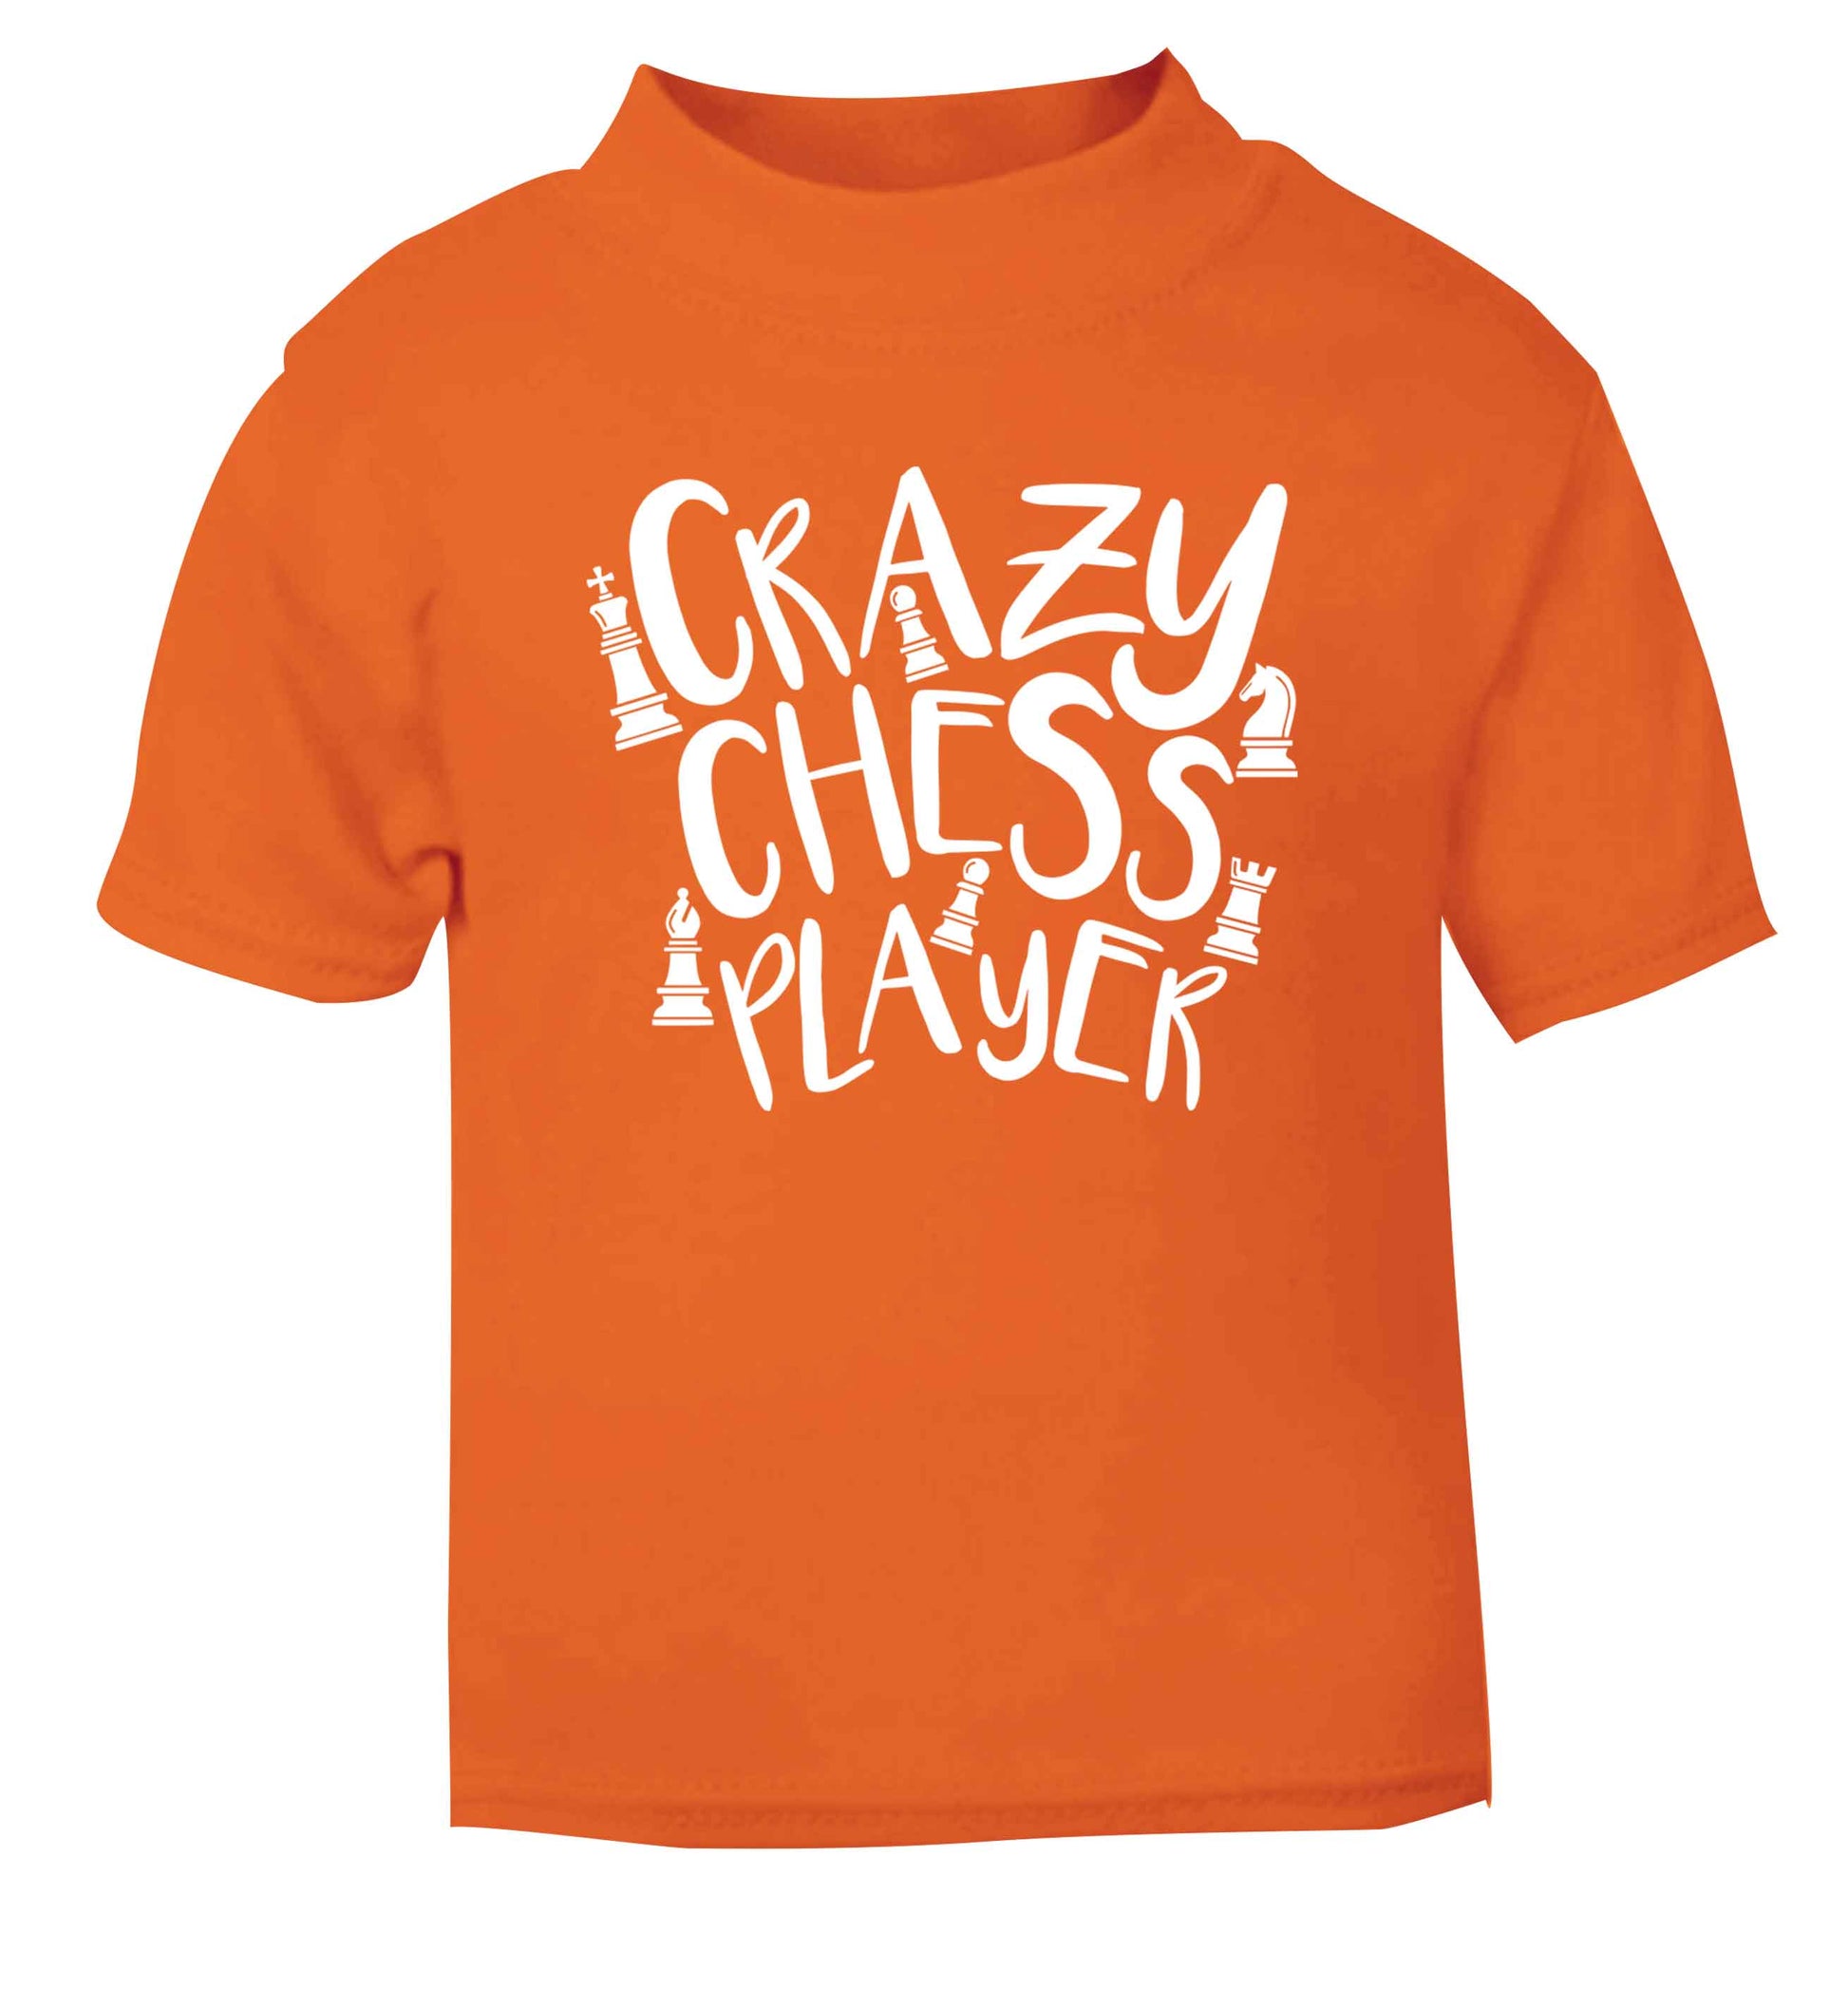 Crazy chess player orange Baby Toddler Tshirt 2 Years